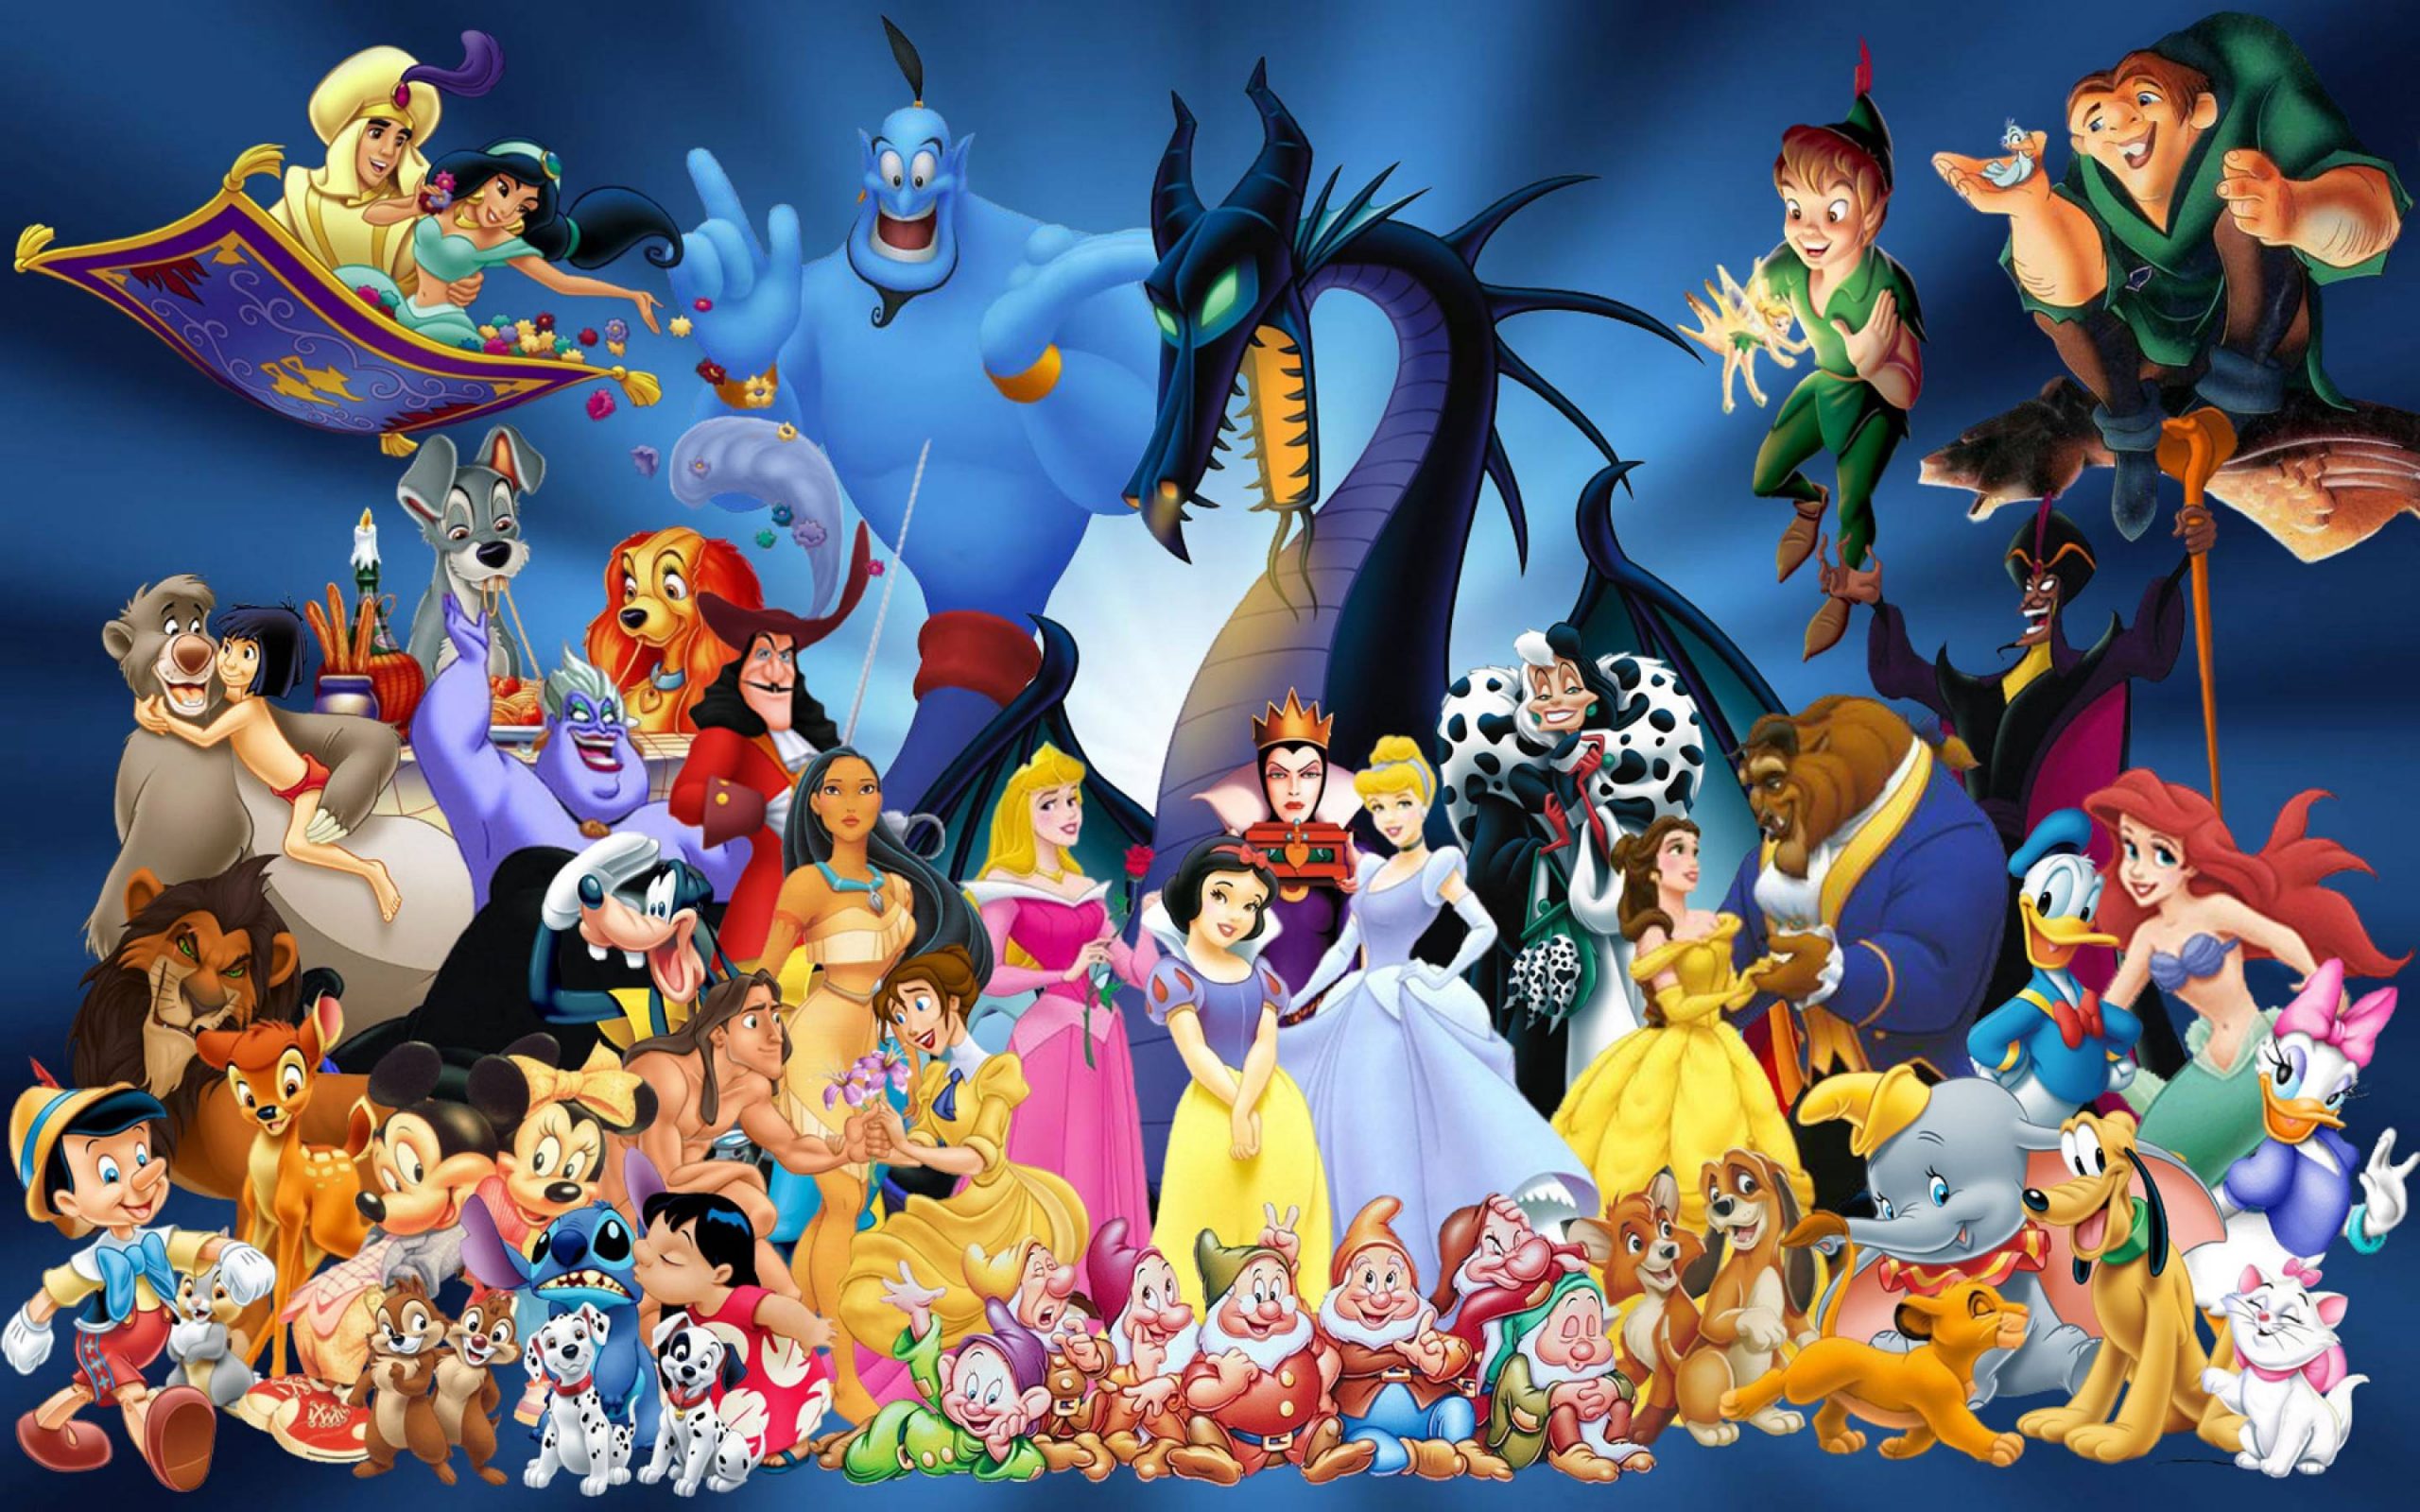 Fondos de pantalla de Disney, Wallpapers hd Gratis para PC, Android e iPhone